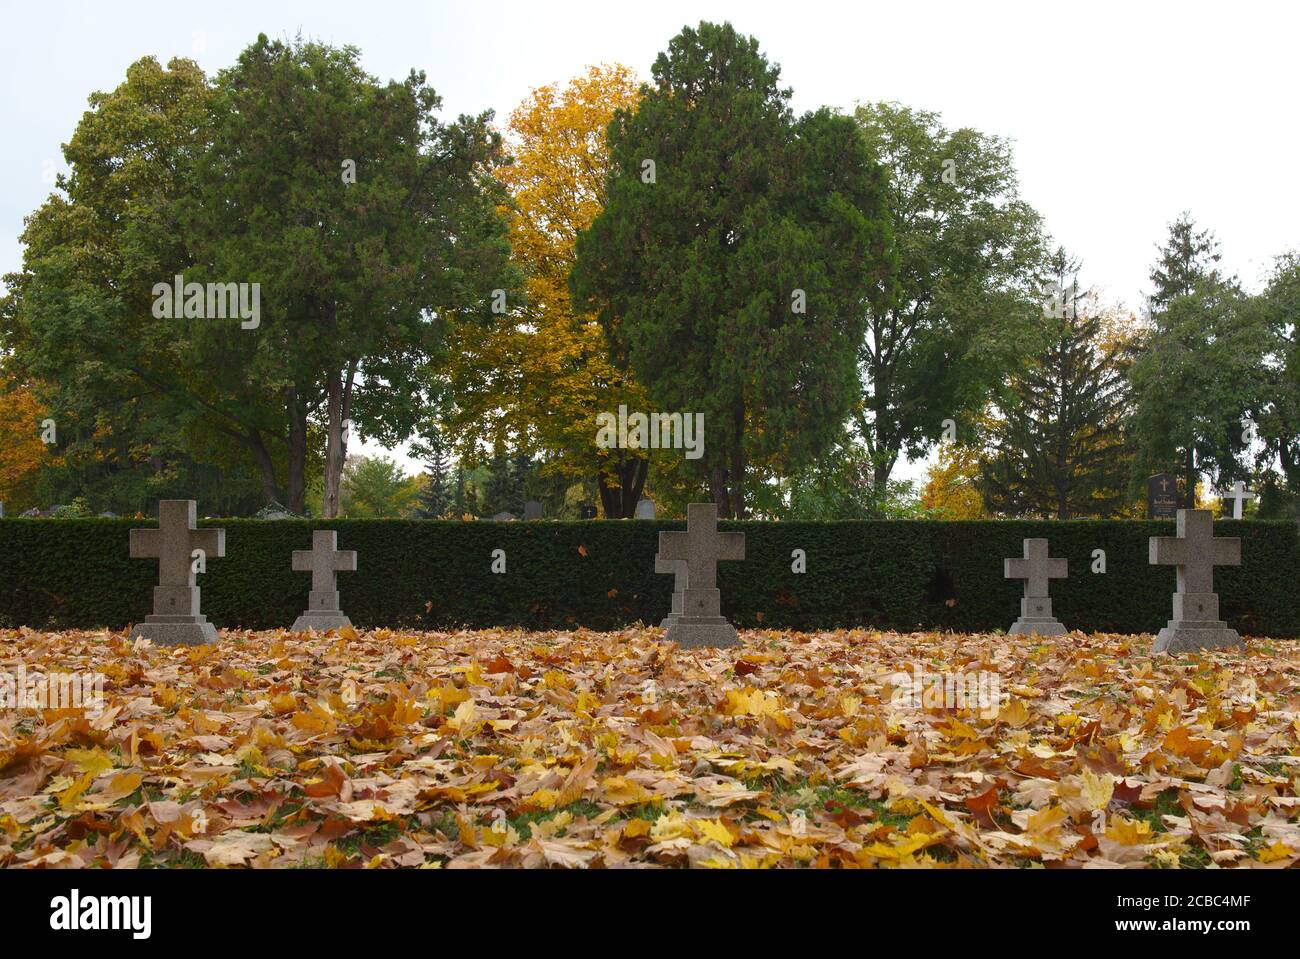 Gedenkstätte im Herbstlichem Gewand Foto Stock